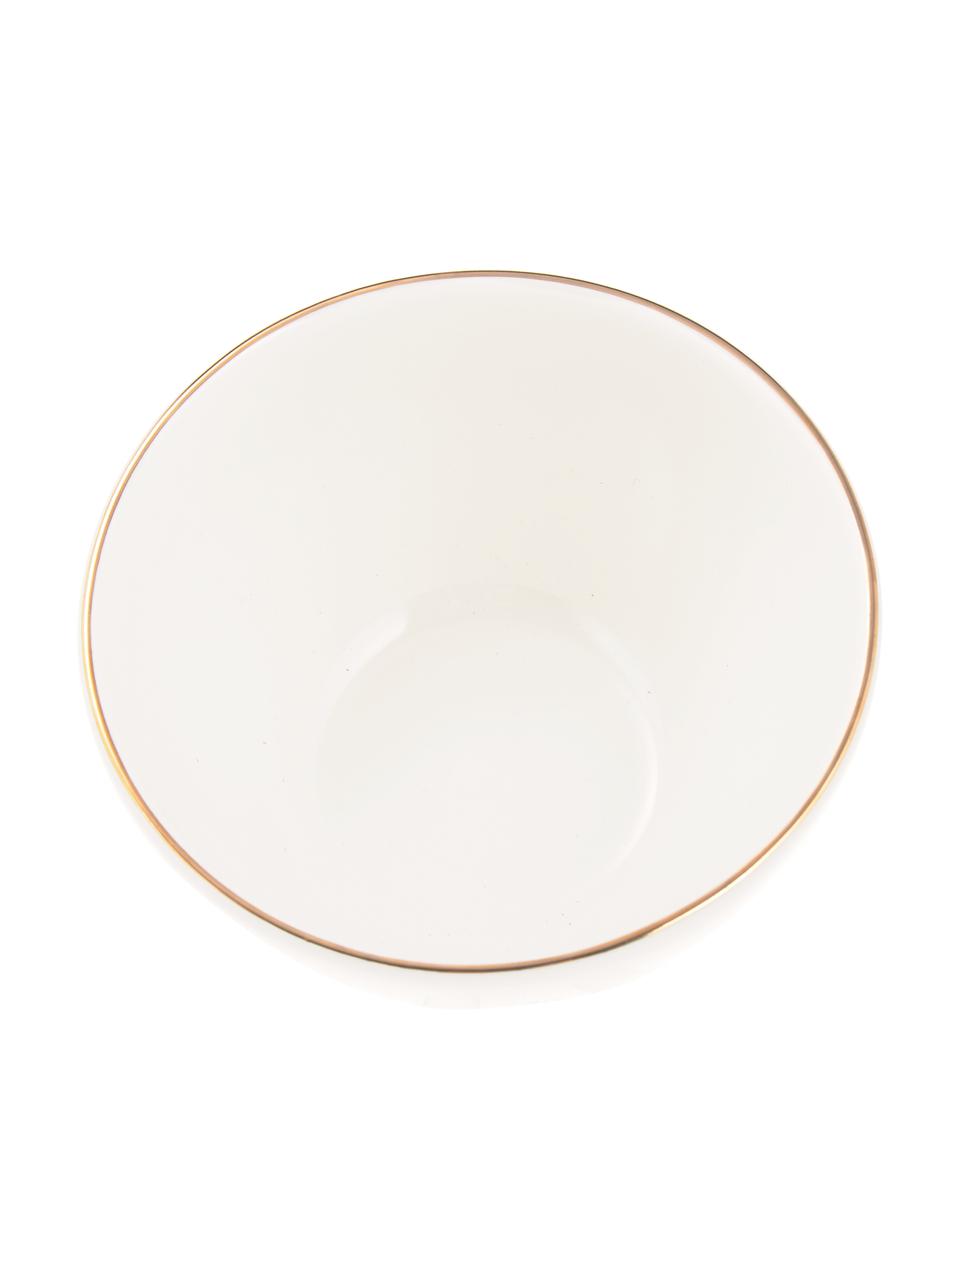 Ručně vyrobená miska se zlatým okrajem Allure, 6 ks, Keramika, Bílá, zlatá, Ø 15 cm